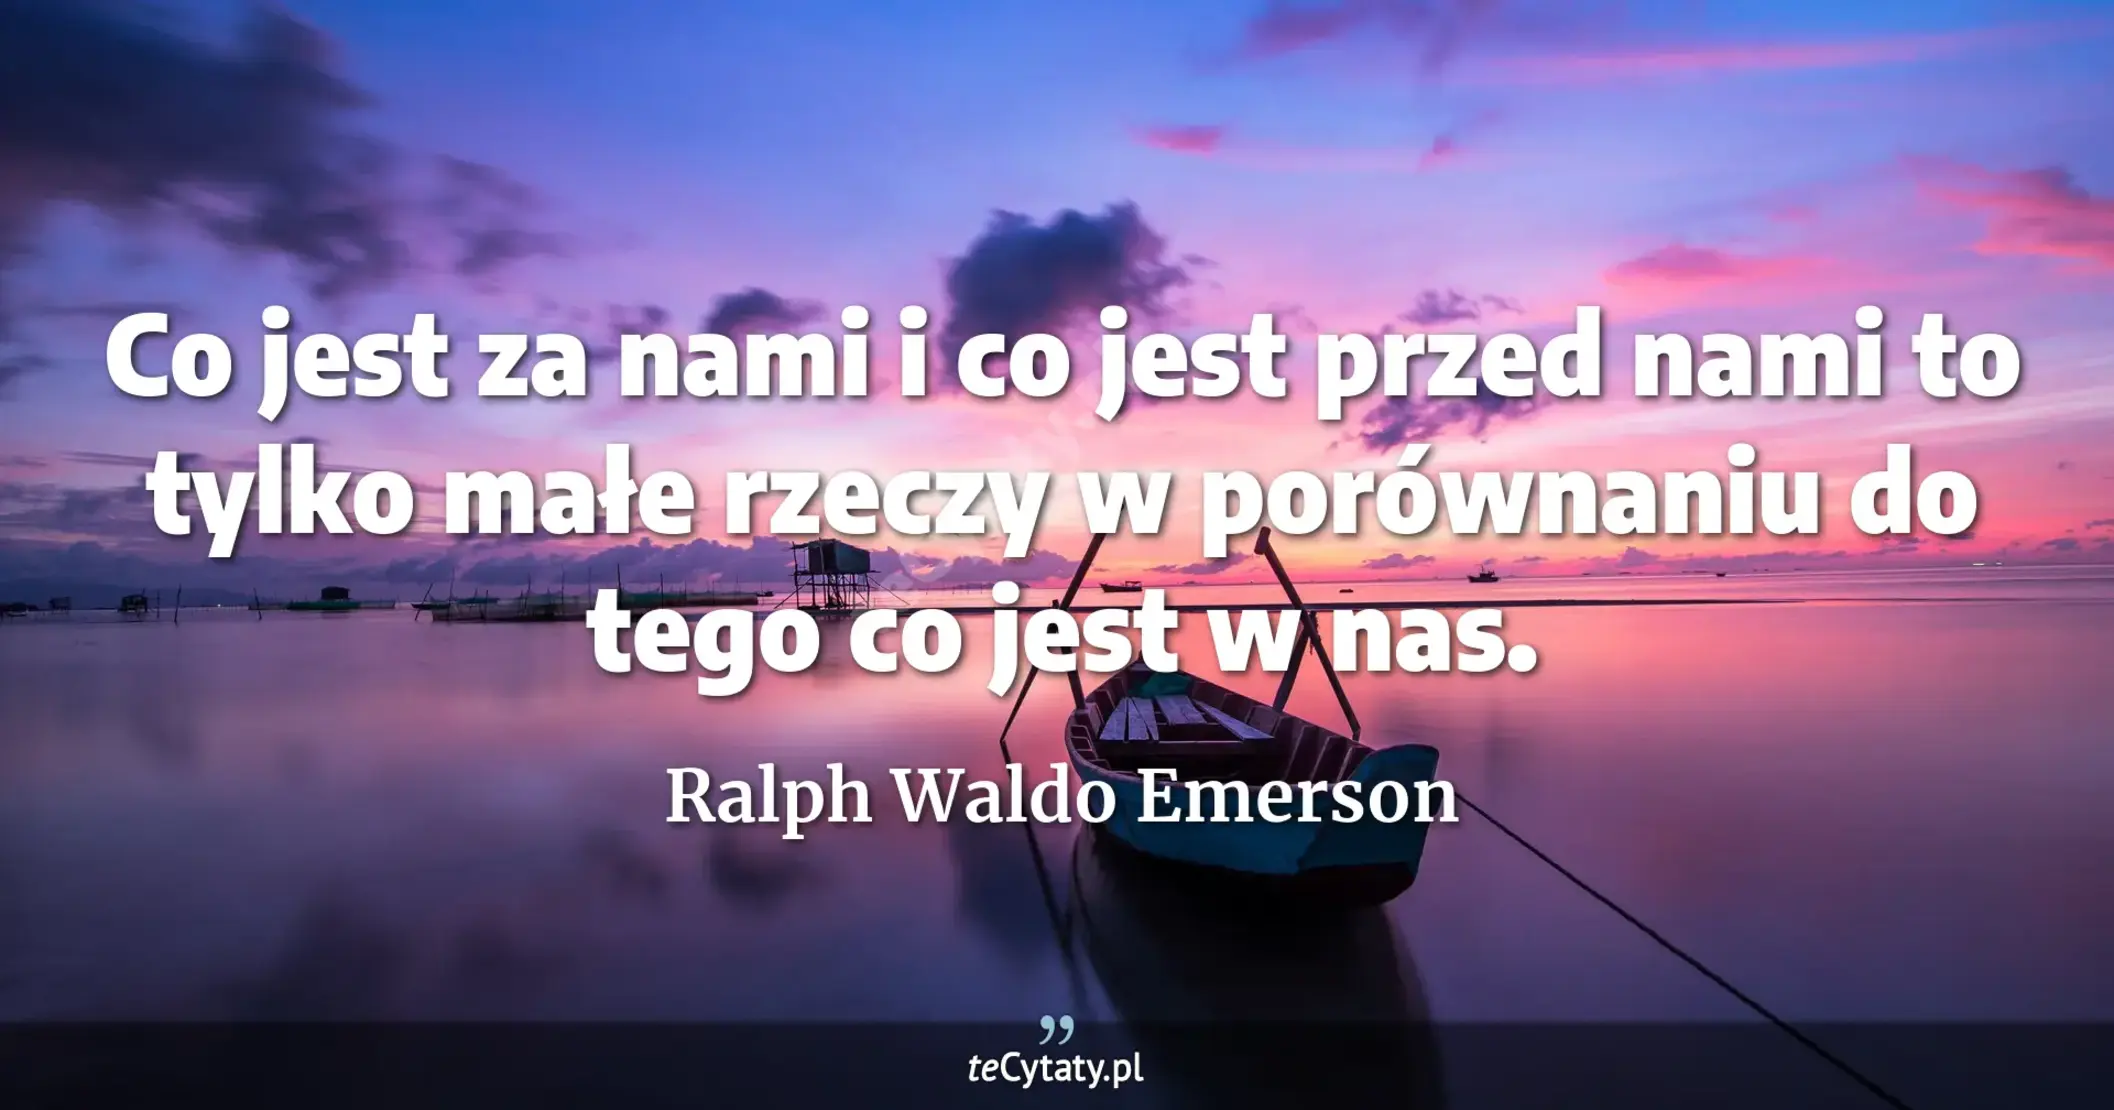 Co jest za nami i co jest przed nami to tylko małe rzeczy w porównaniu do tego co jest w nas. - Ralph Waldo Emerson